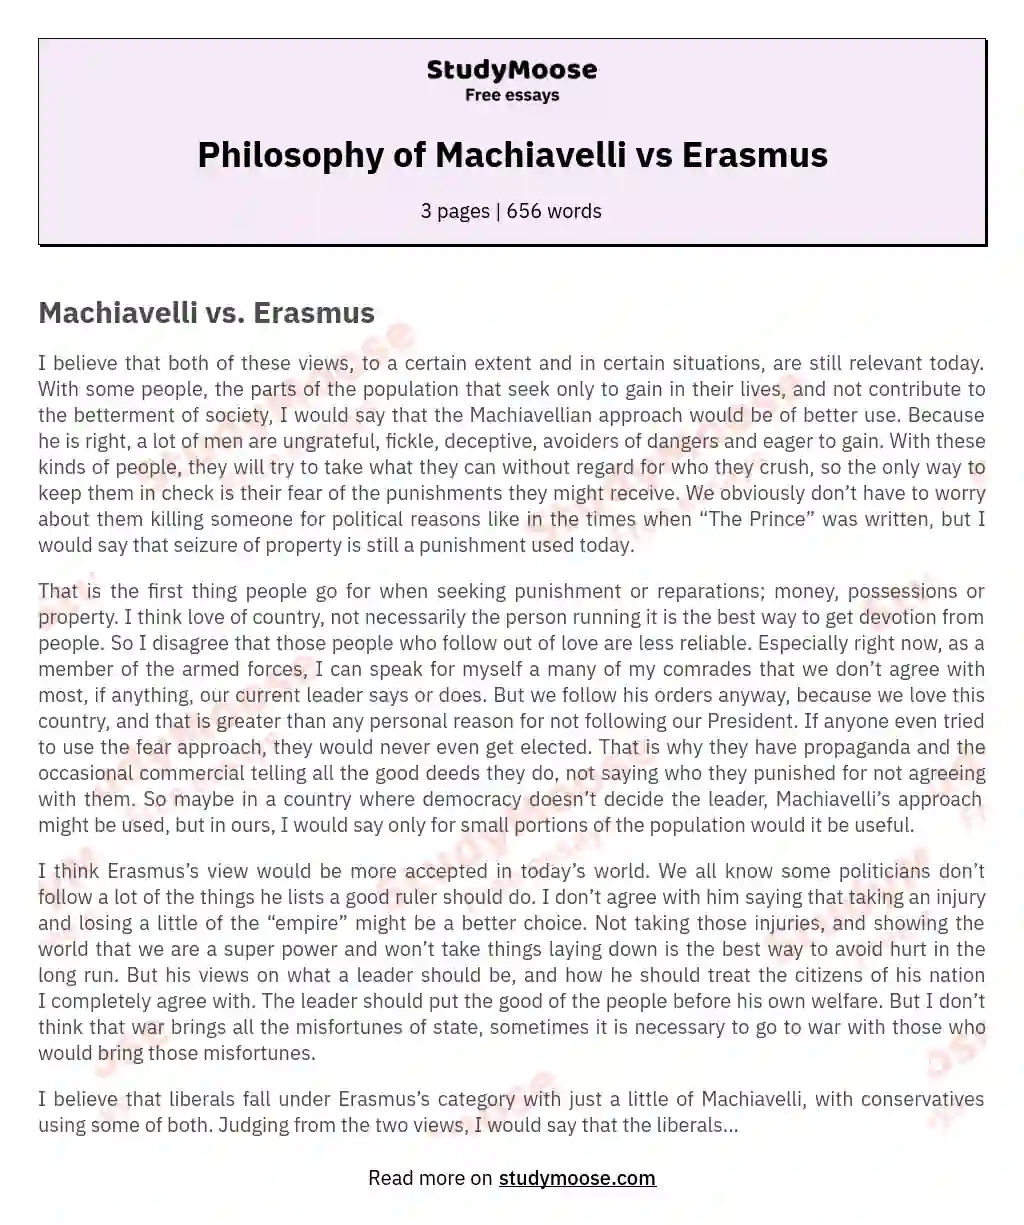 Philosophy of Machiavelli vs Erasmus